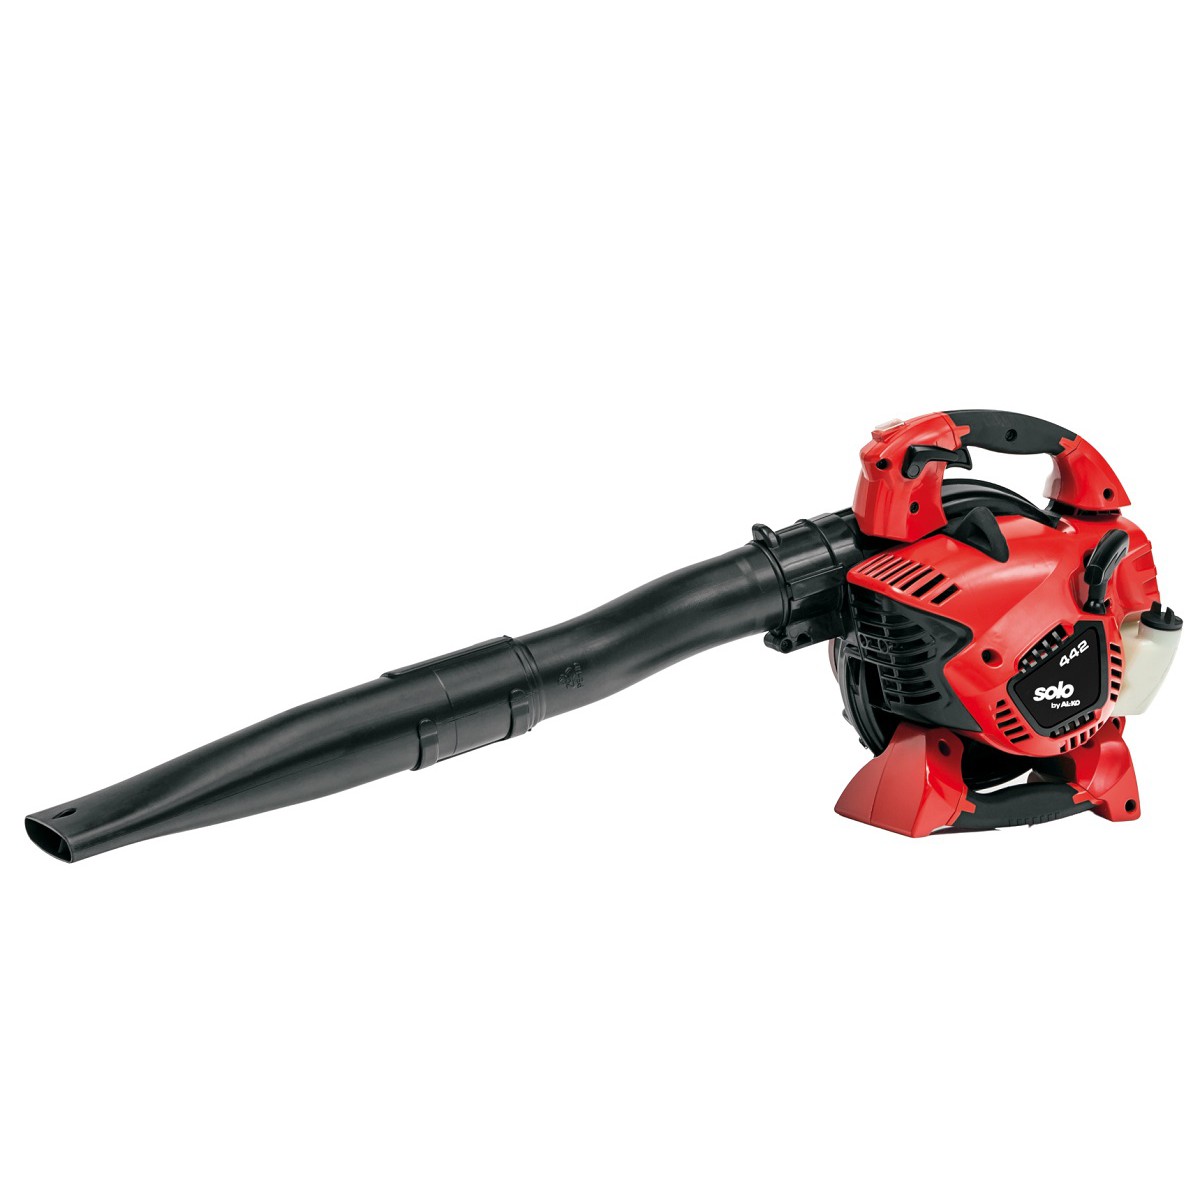 AL-KO 442 leaf blower / petrol vacuum cleaner